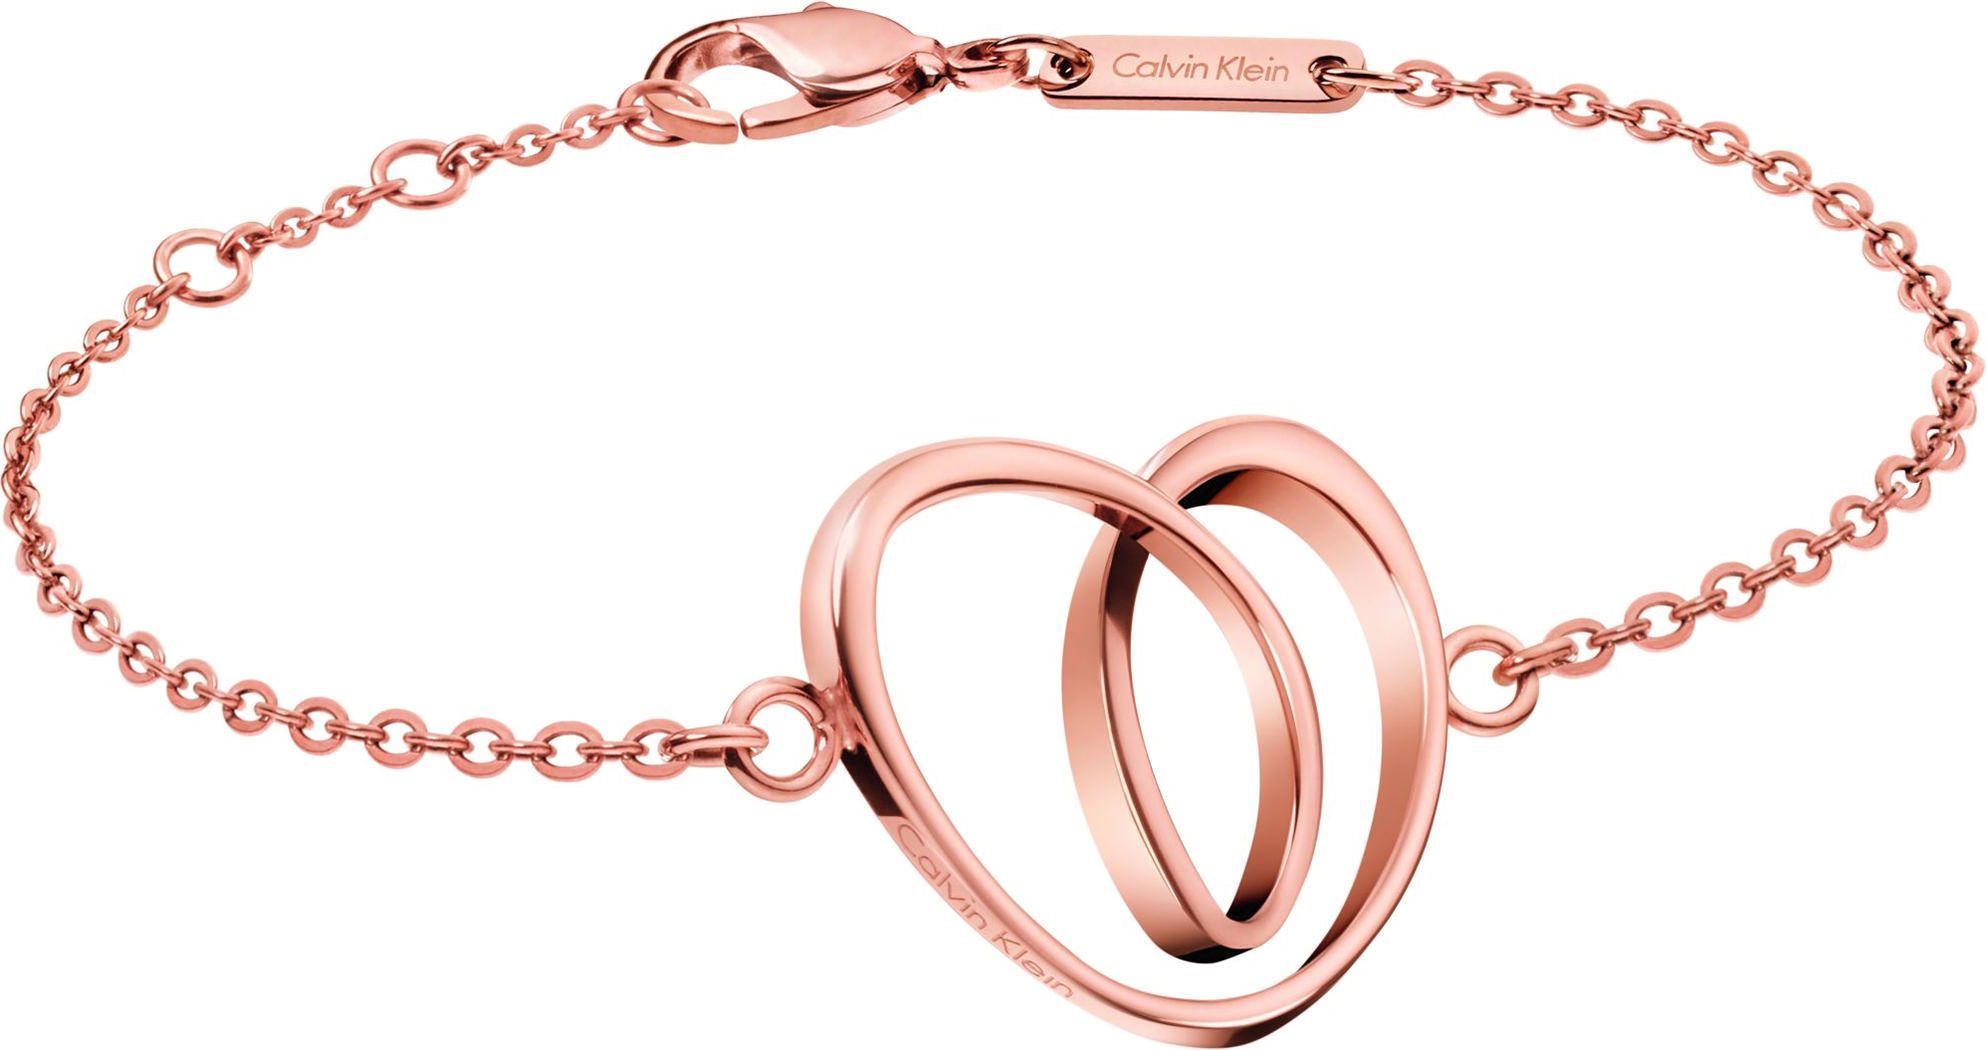 Calvin Klein SUB 300T Clive Cussler Bracelet For Women - 1